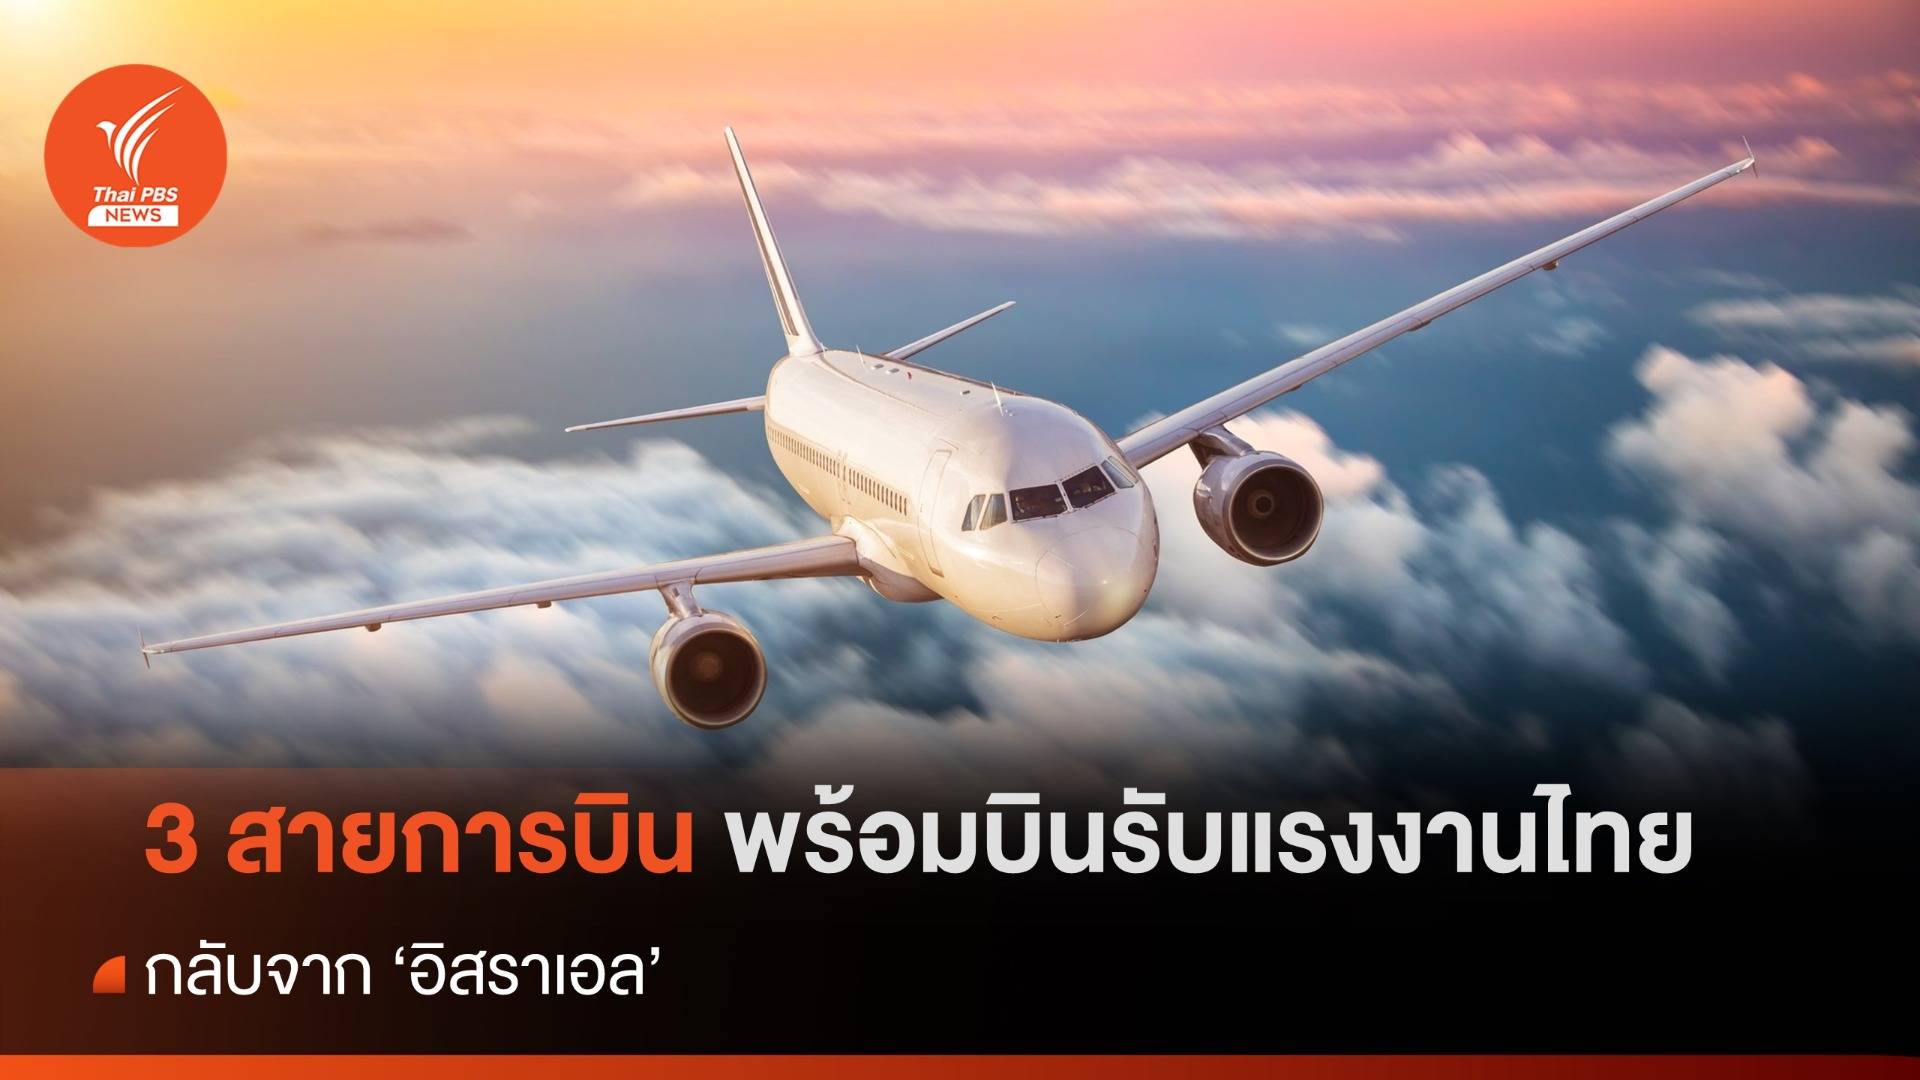 3 สายการบินพร้อมปฏิบัติการรับแรงงานไทยกลับประเทศ พร้อมเดินทางใน 3 วัน 